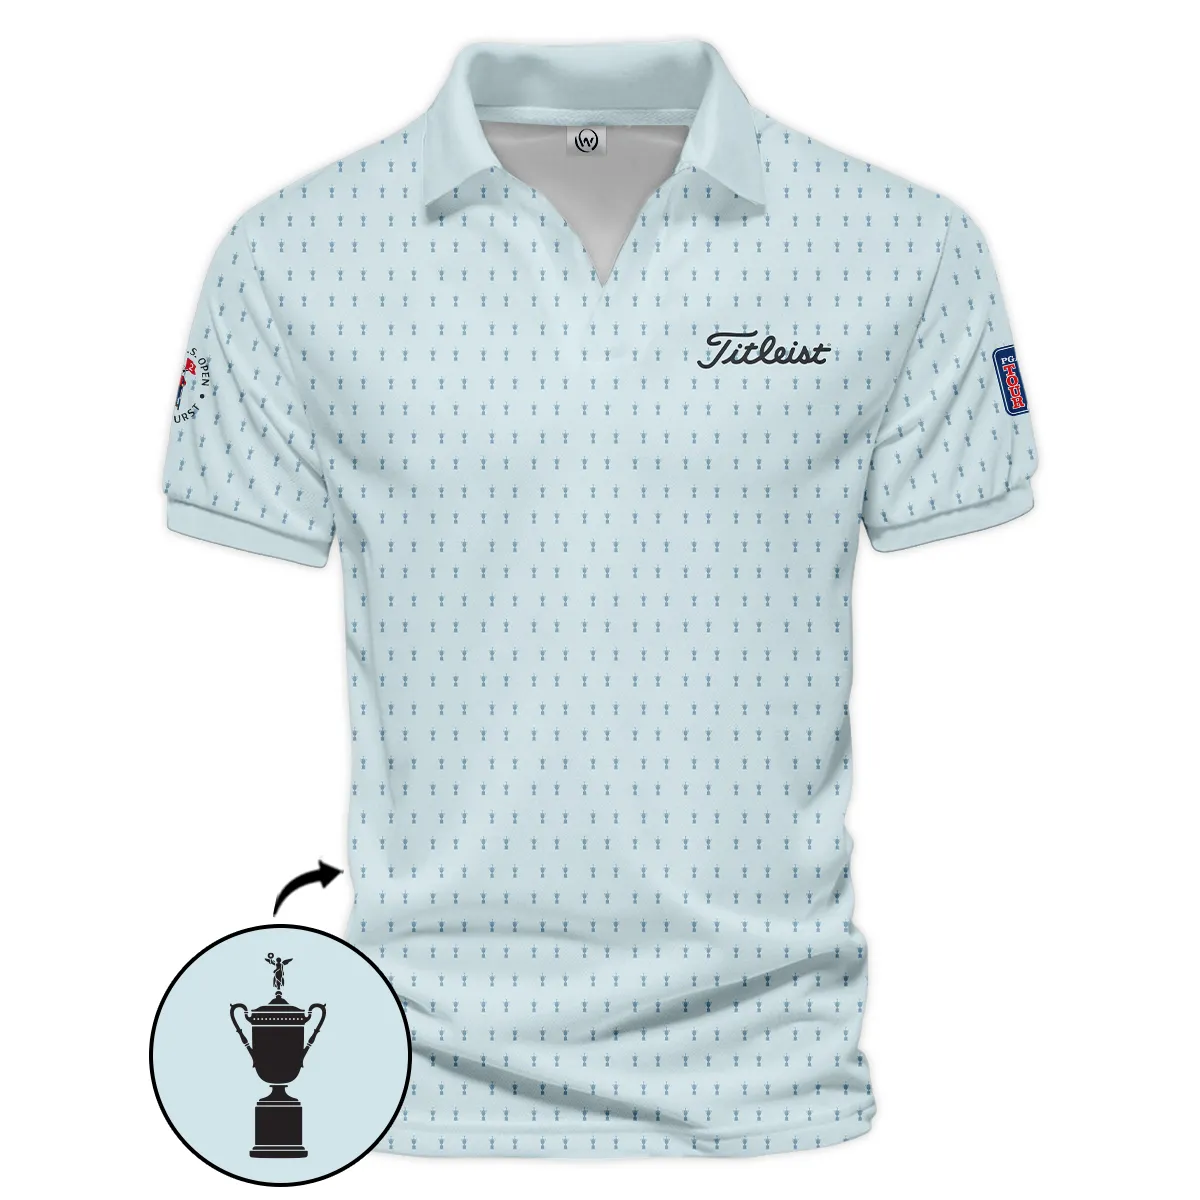 Golf Pattern Cup Light Blue Mix Green 124th U.S. Open Pinehurst Pinehurst Titleist Zipper Hoodie Shirt Style Classic